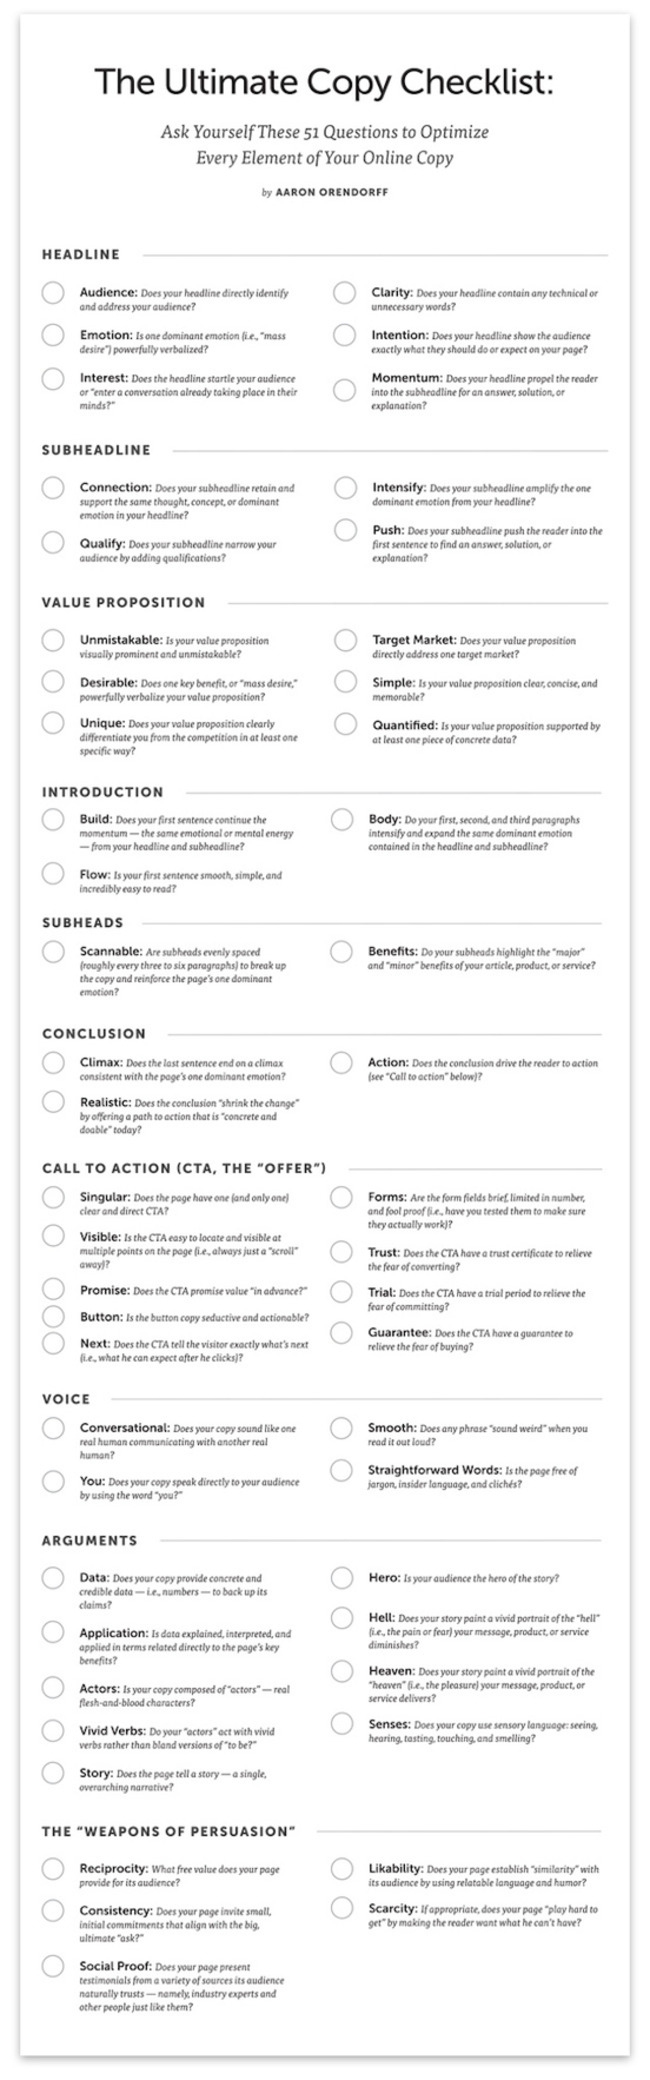 The Ultimate Copy Checklist: 51 Questions to Optimize Every Element of Your Online Copy [Free Poster] - Copyblogger | Redacción de contenidos, artículos seleccionados por Eva Sanagustin | Scoop.it